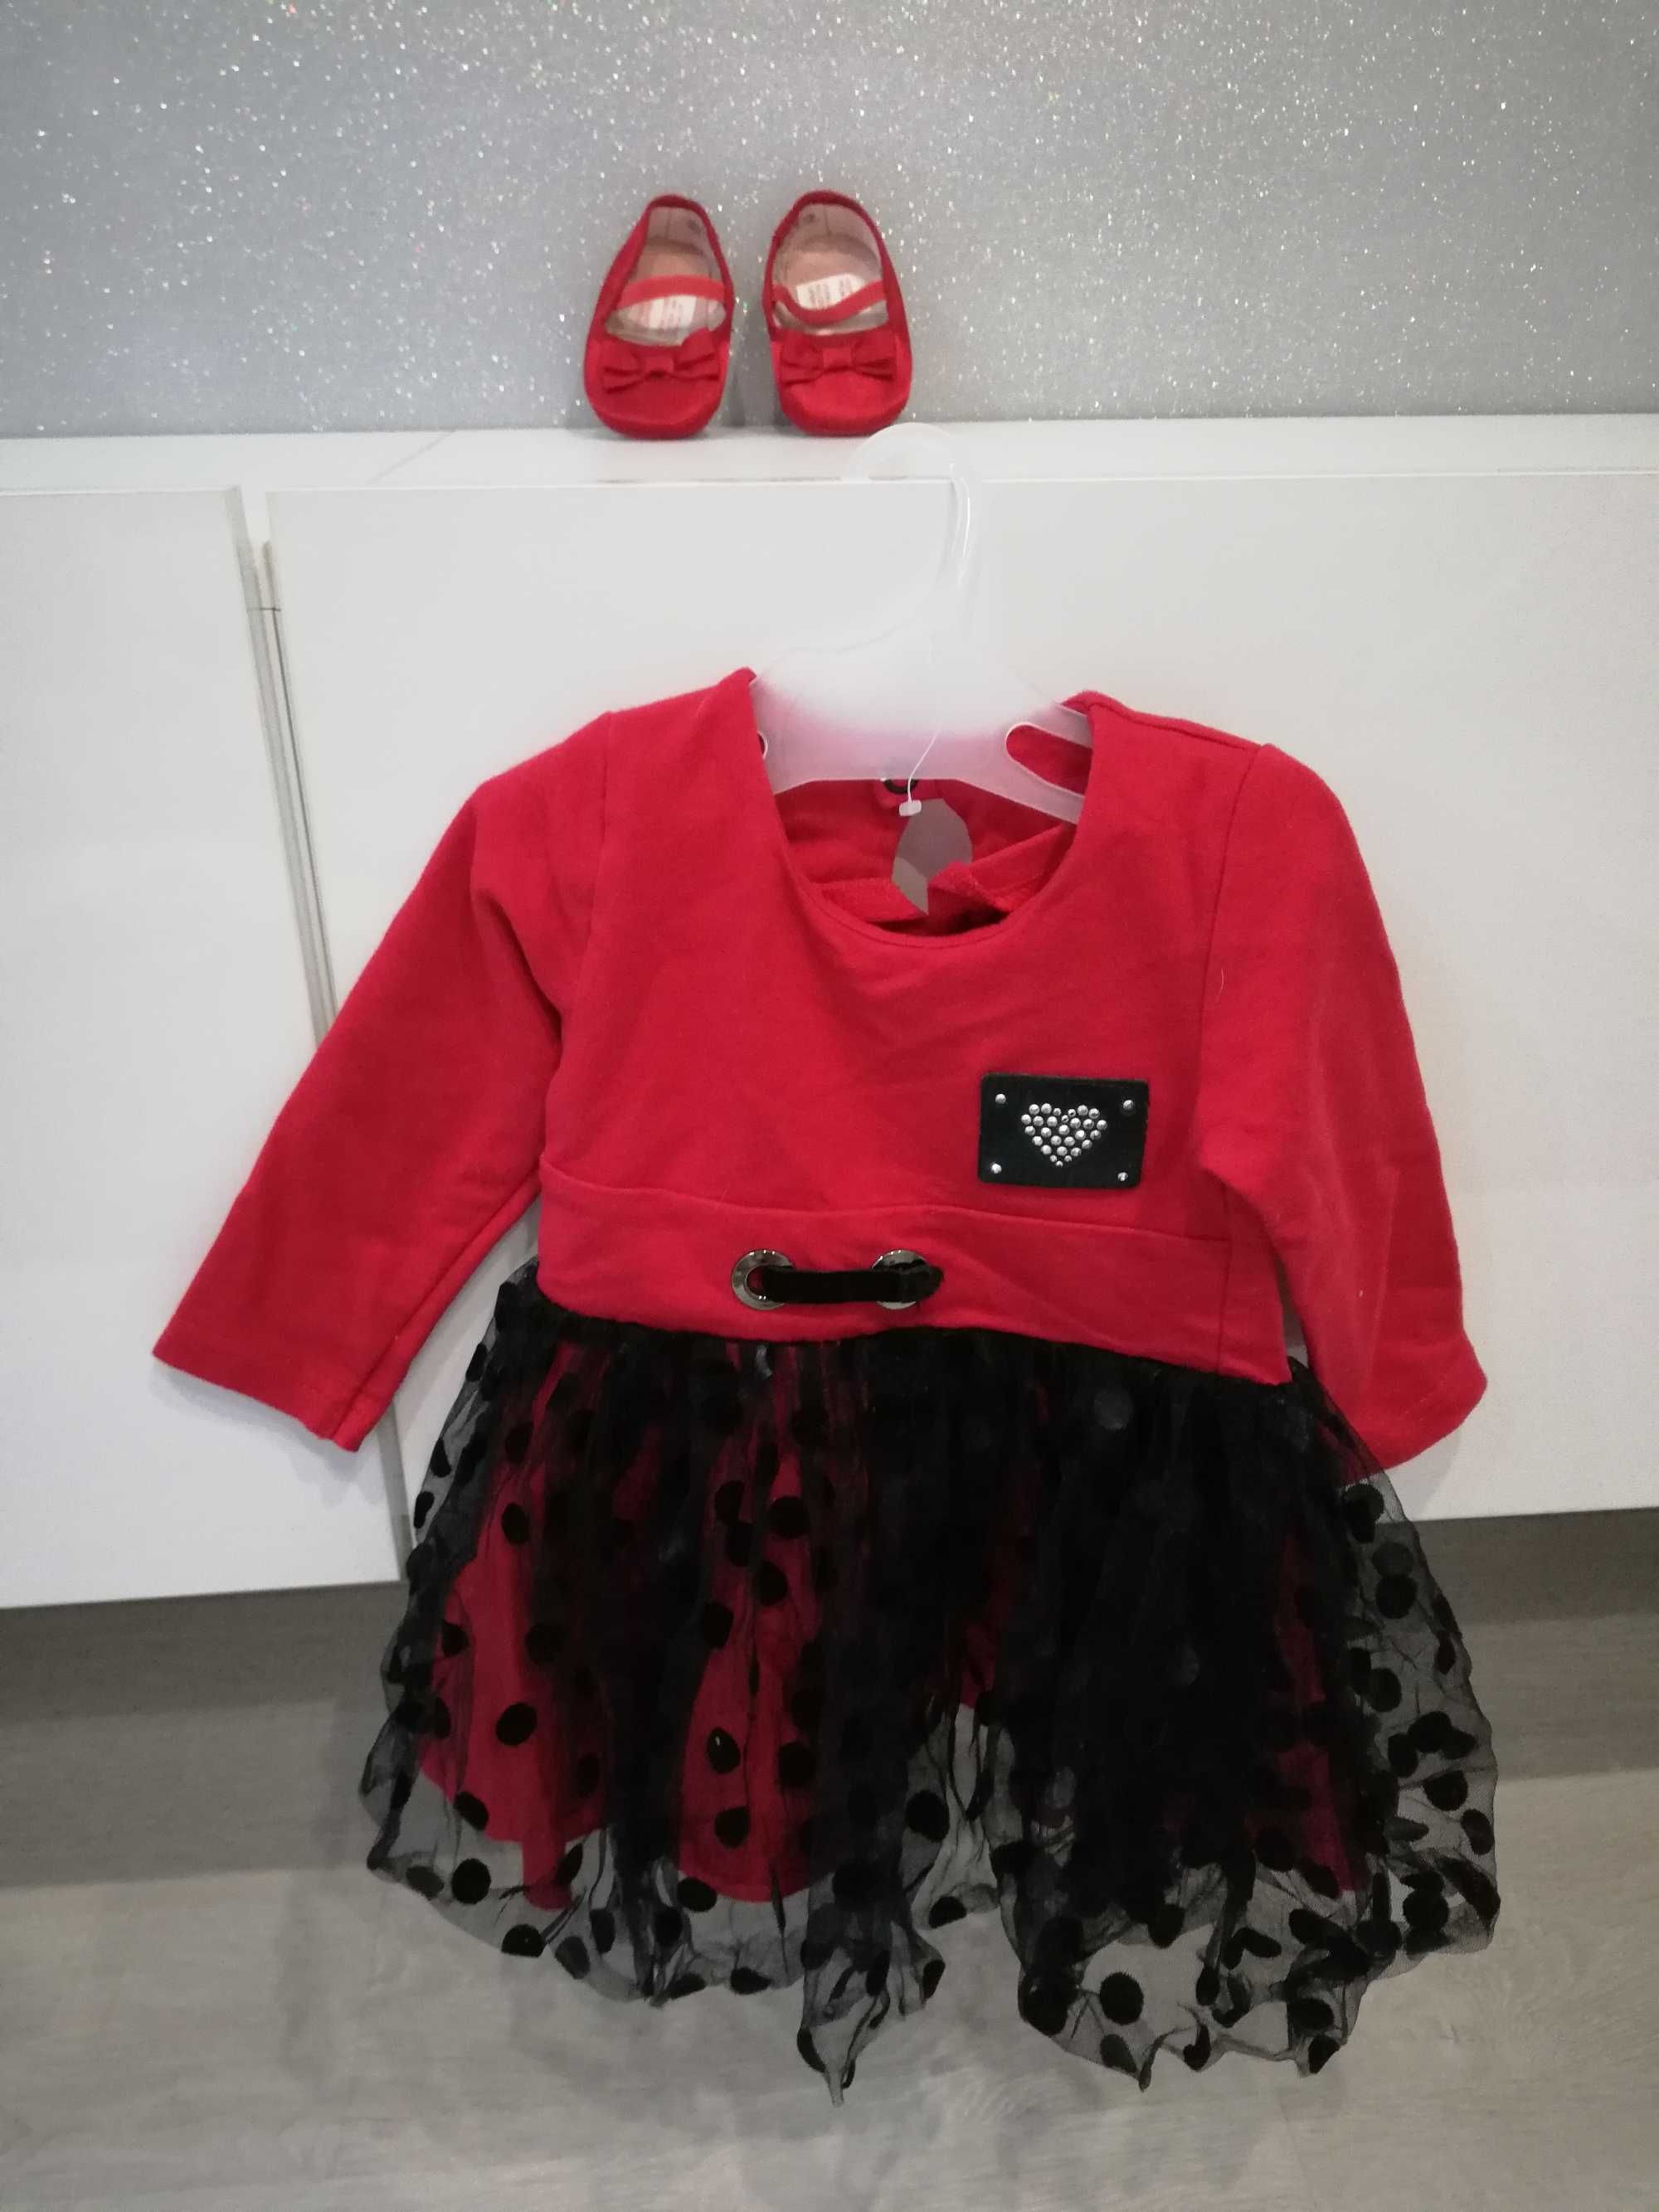 Okazja!! Piękna czerwona sukienka i balerinki firmy Hm! Rozmiar 74